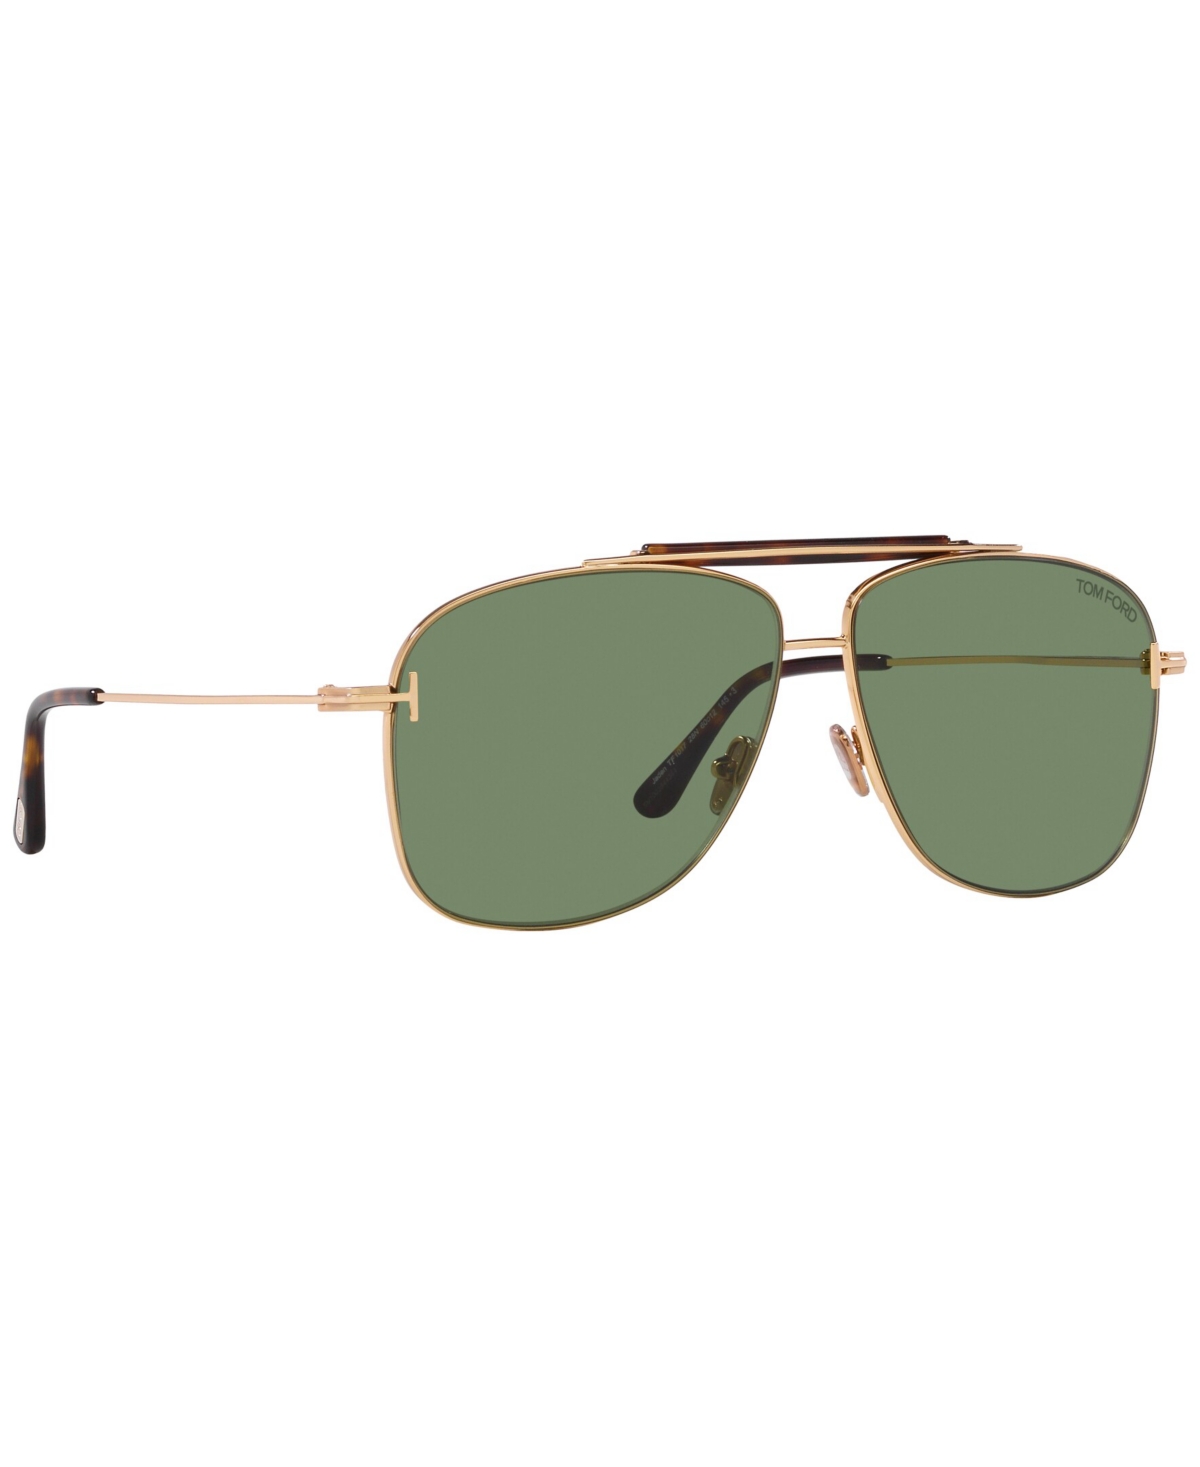 Tom Ford Men's Sunglasses, Jaden In Shiny Silver